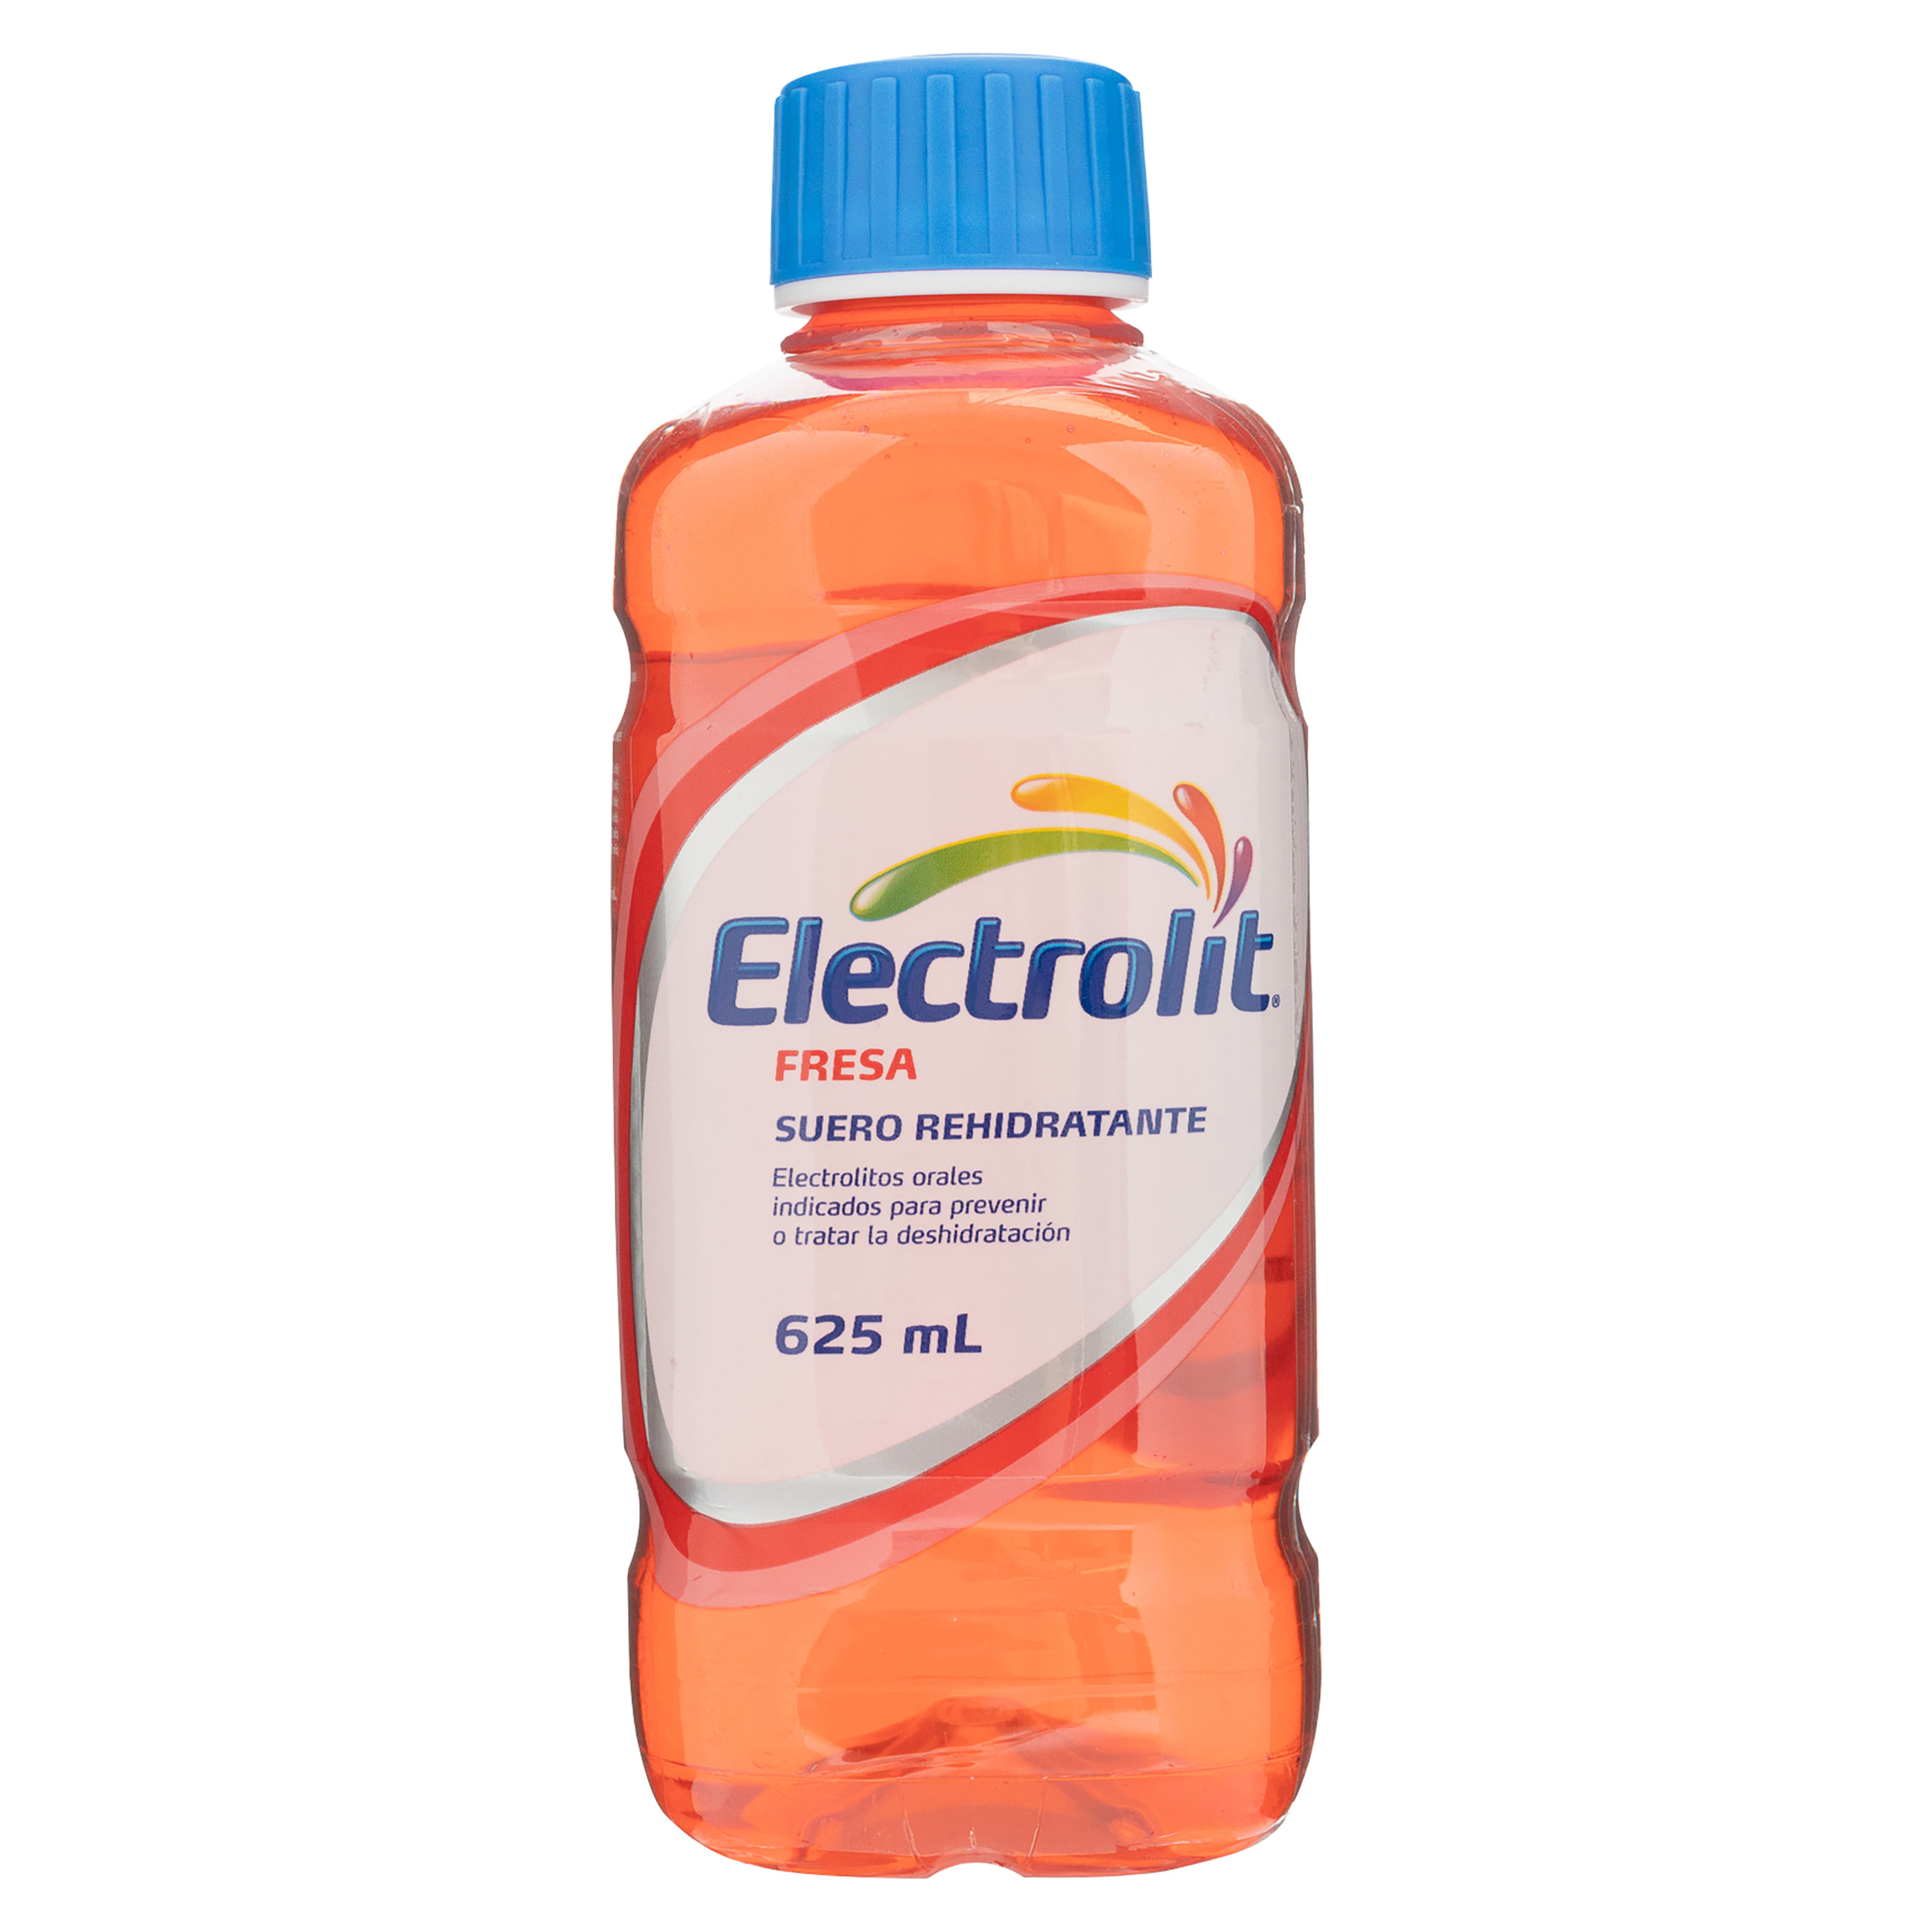 Electrolit-Suero-Rehidrat-Fresa-625Ml-1-27937